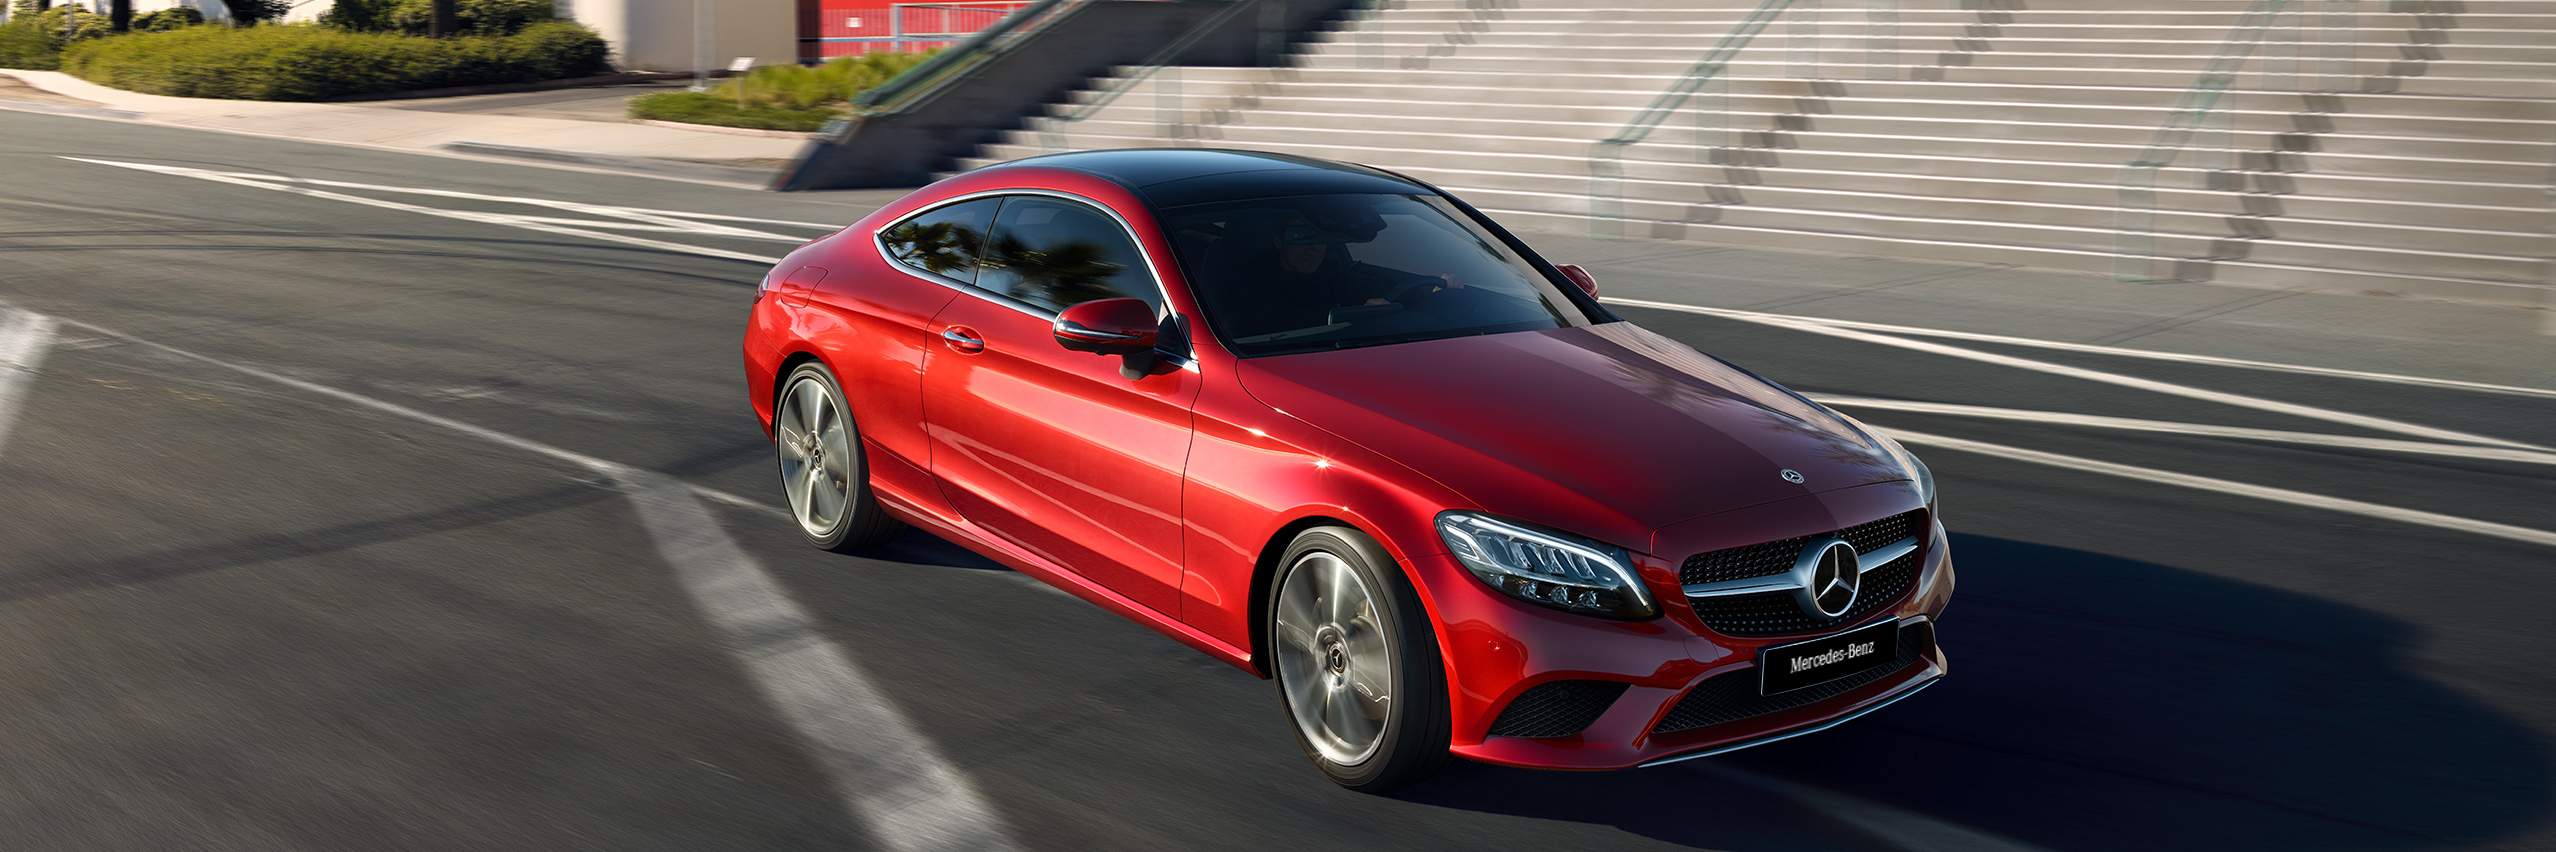 Perfil de la seductiva Clase C Coupe de Mercedes-Benz en color rojo